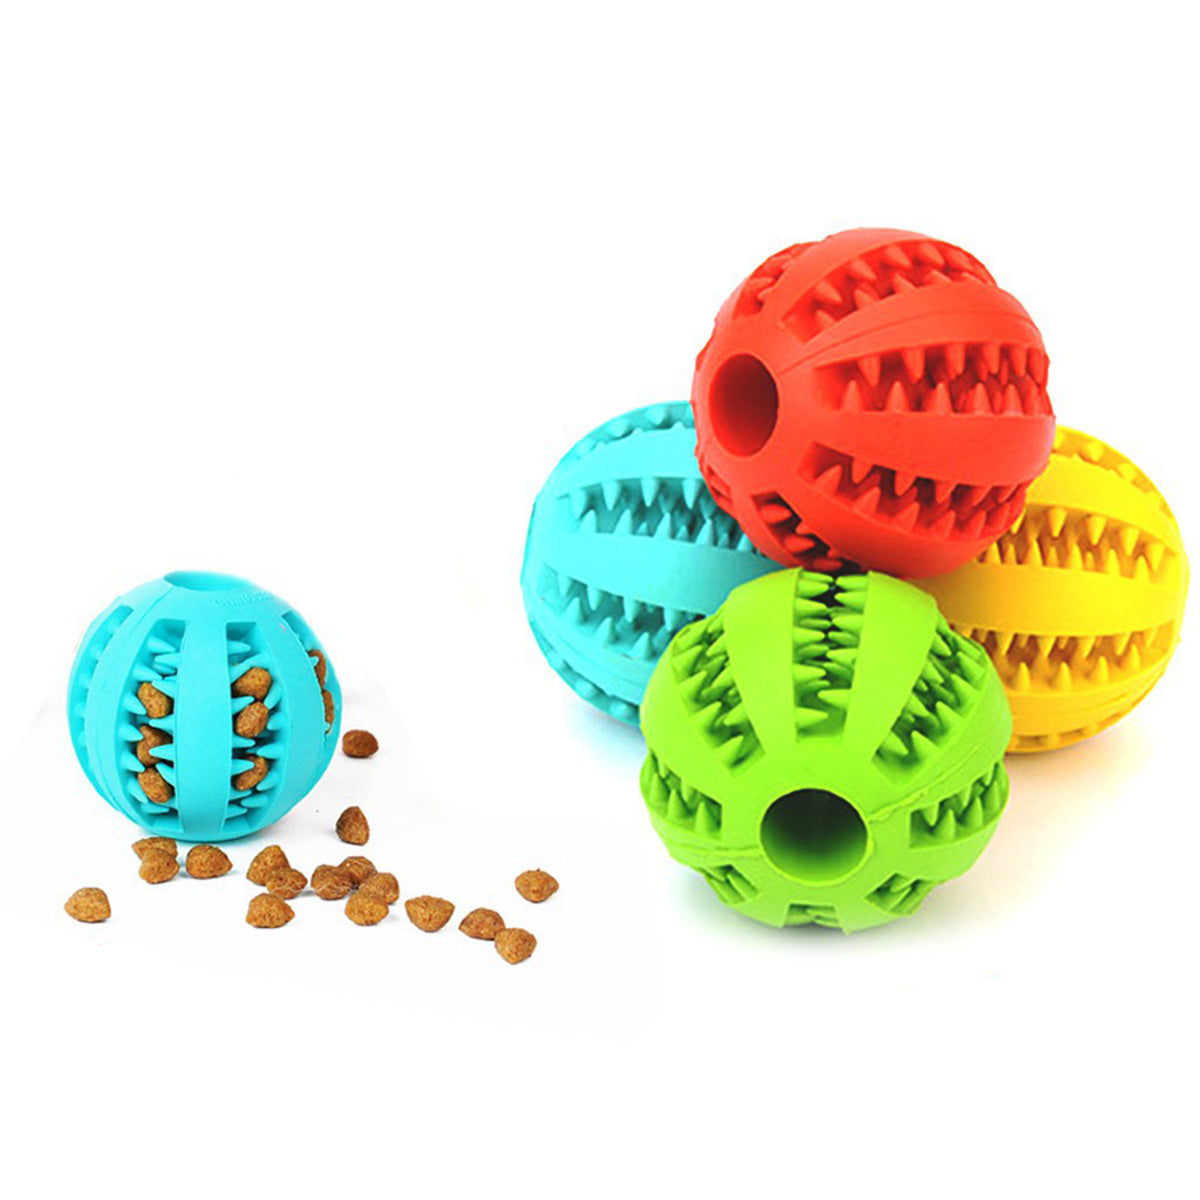 寵物潔牙玩具球 漏食球 漏食玩具